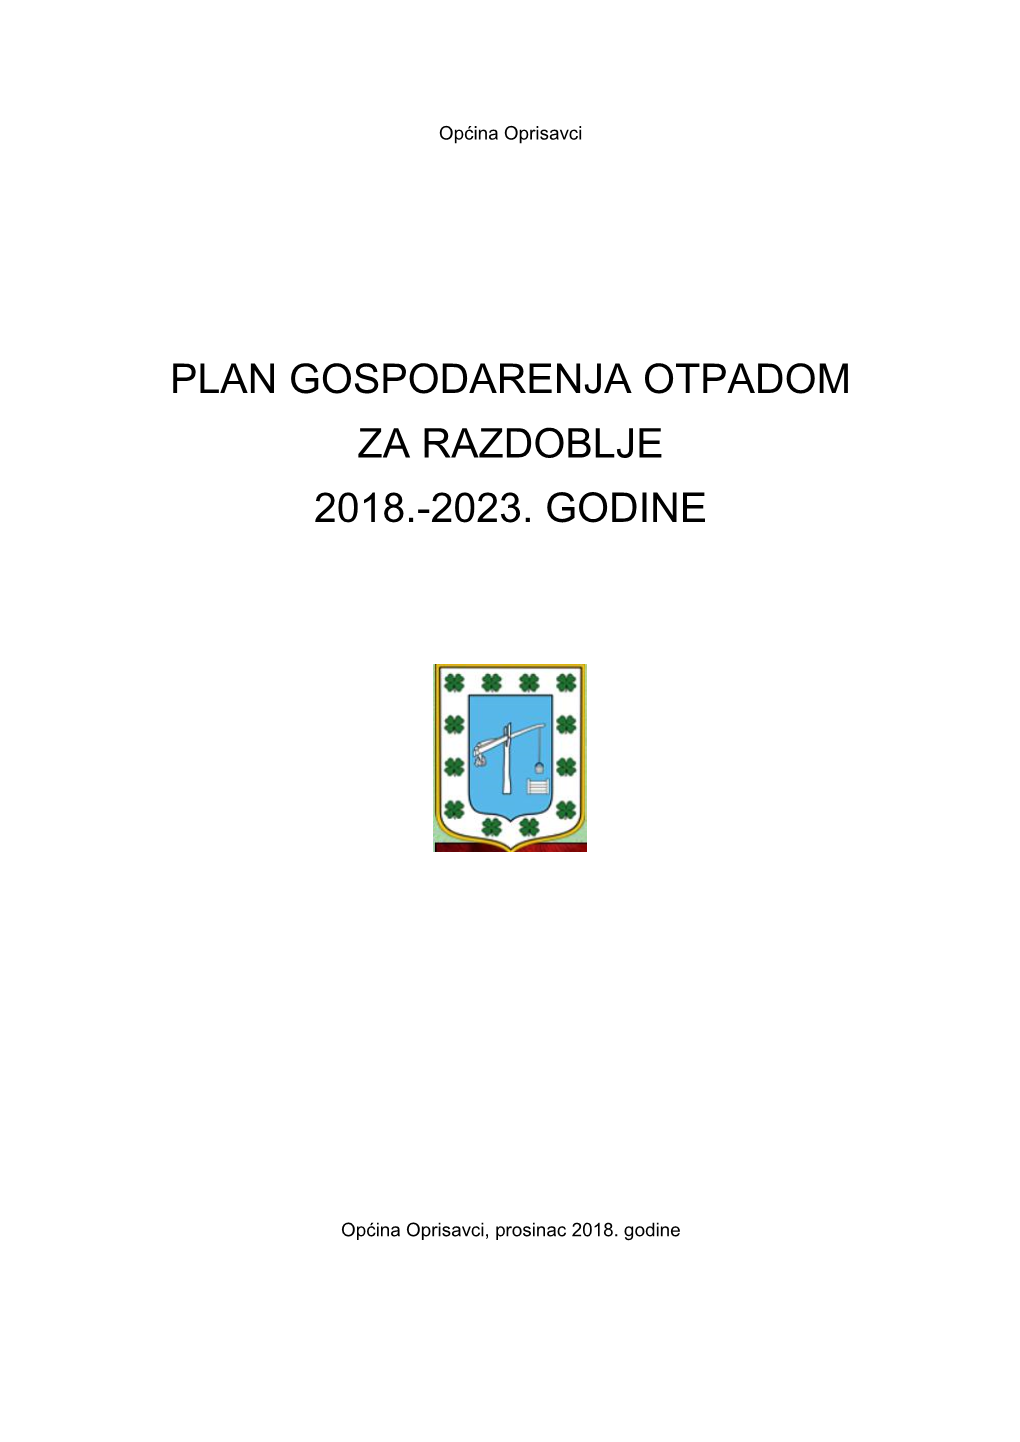 Plan Gospodarenja Otpadom Za Razdoblje 2018.-2023